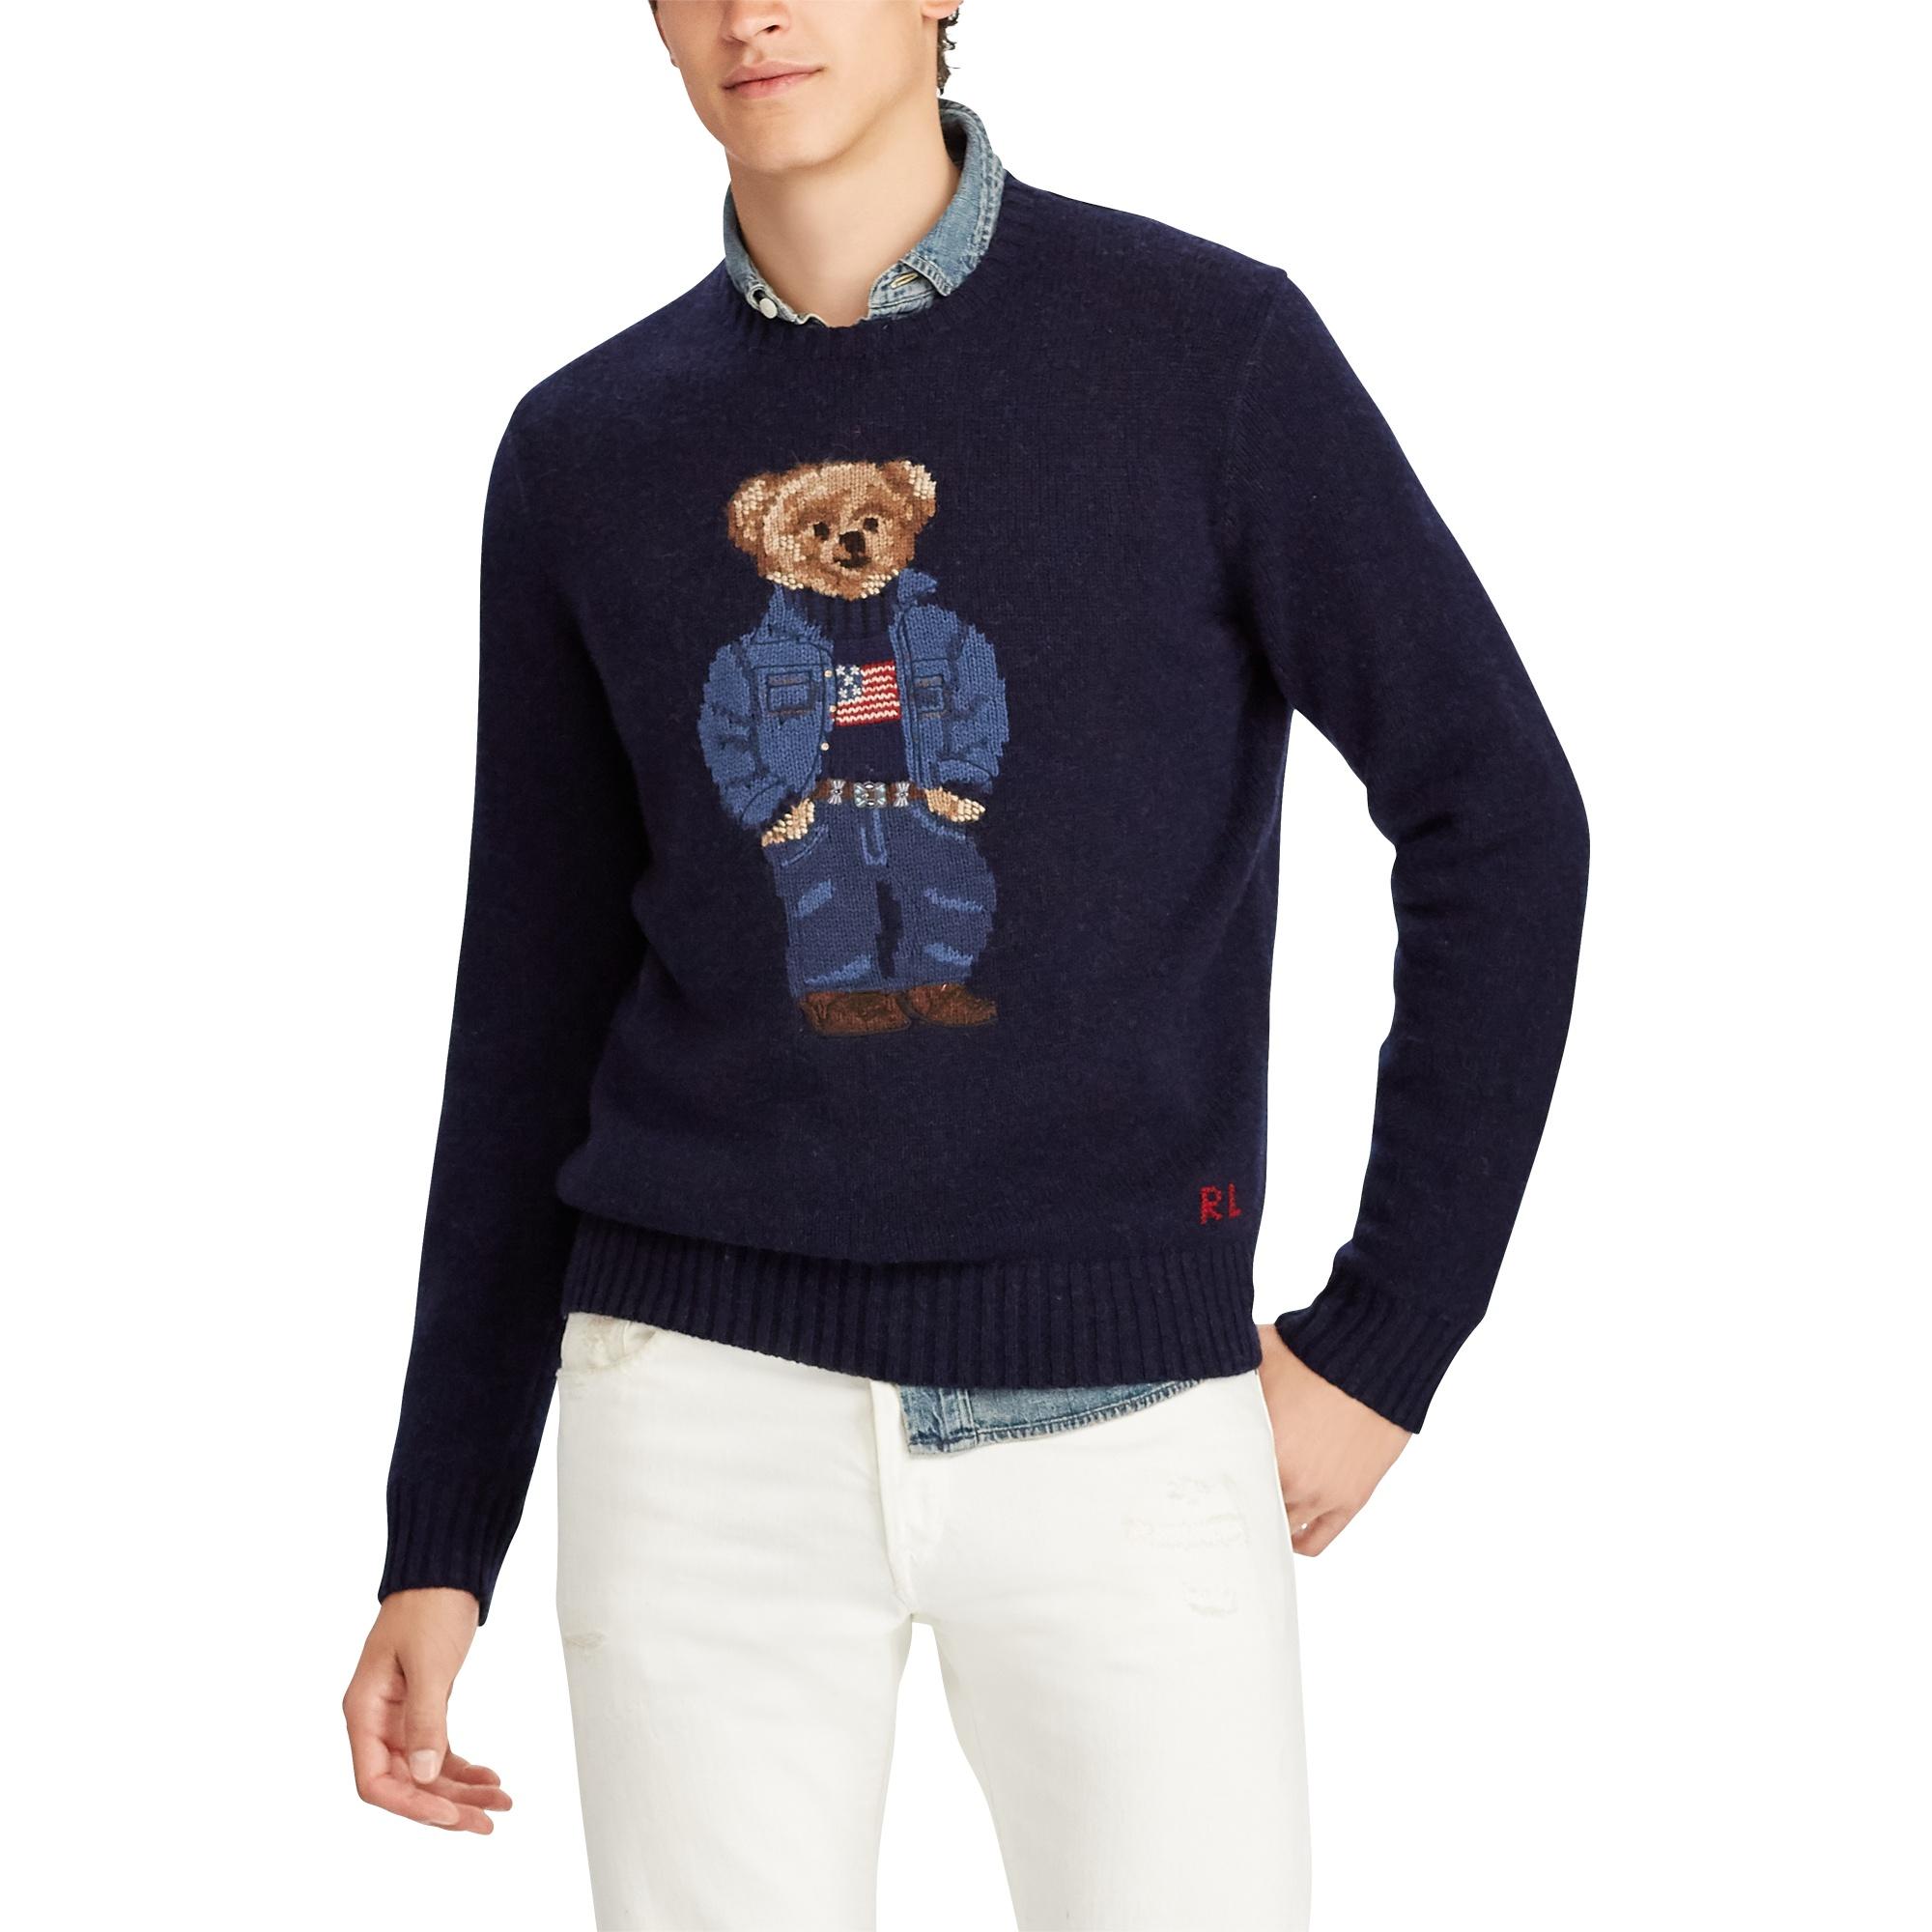 Polo Ralph Lauren Wool Bear Sweater in Navy (Blue) for Men - Lyst